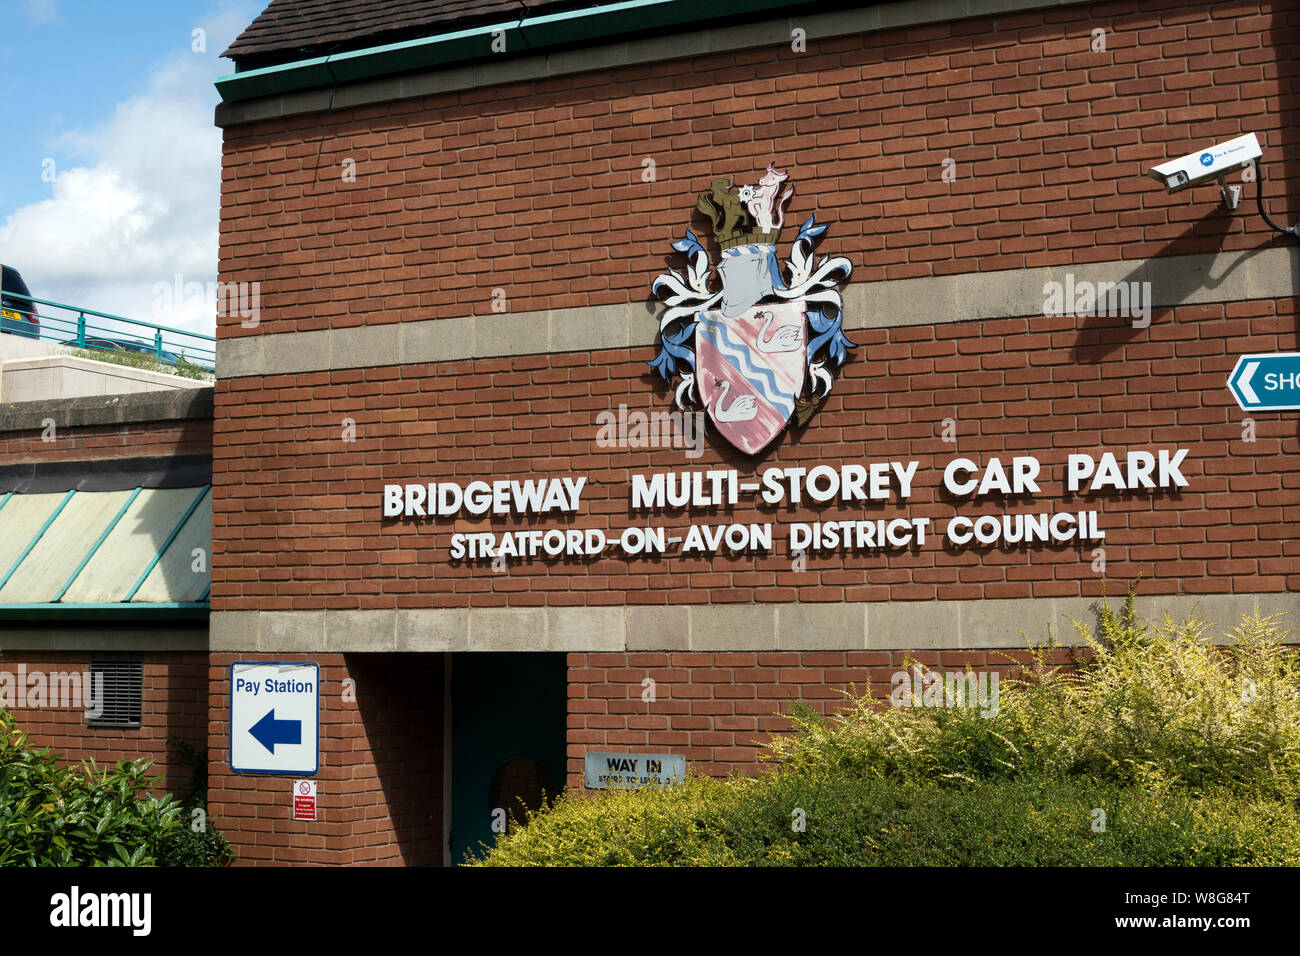 Bridgeway Multi-Storey Car Park, Stratford-upon-Avon, Warwickshire, UK Stock Photo